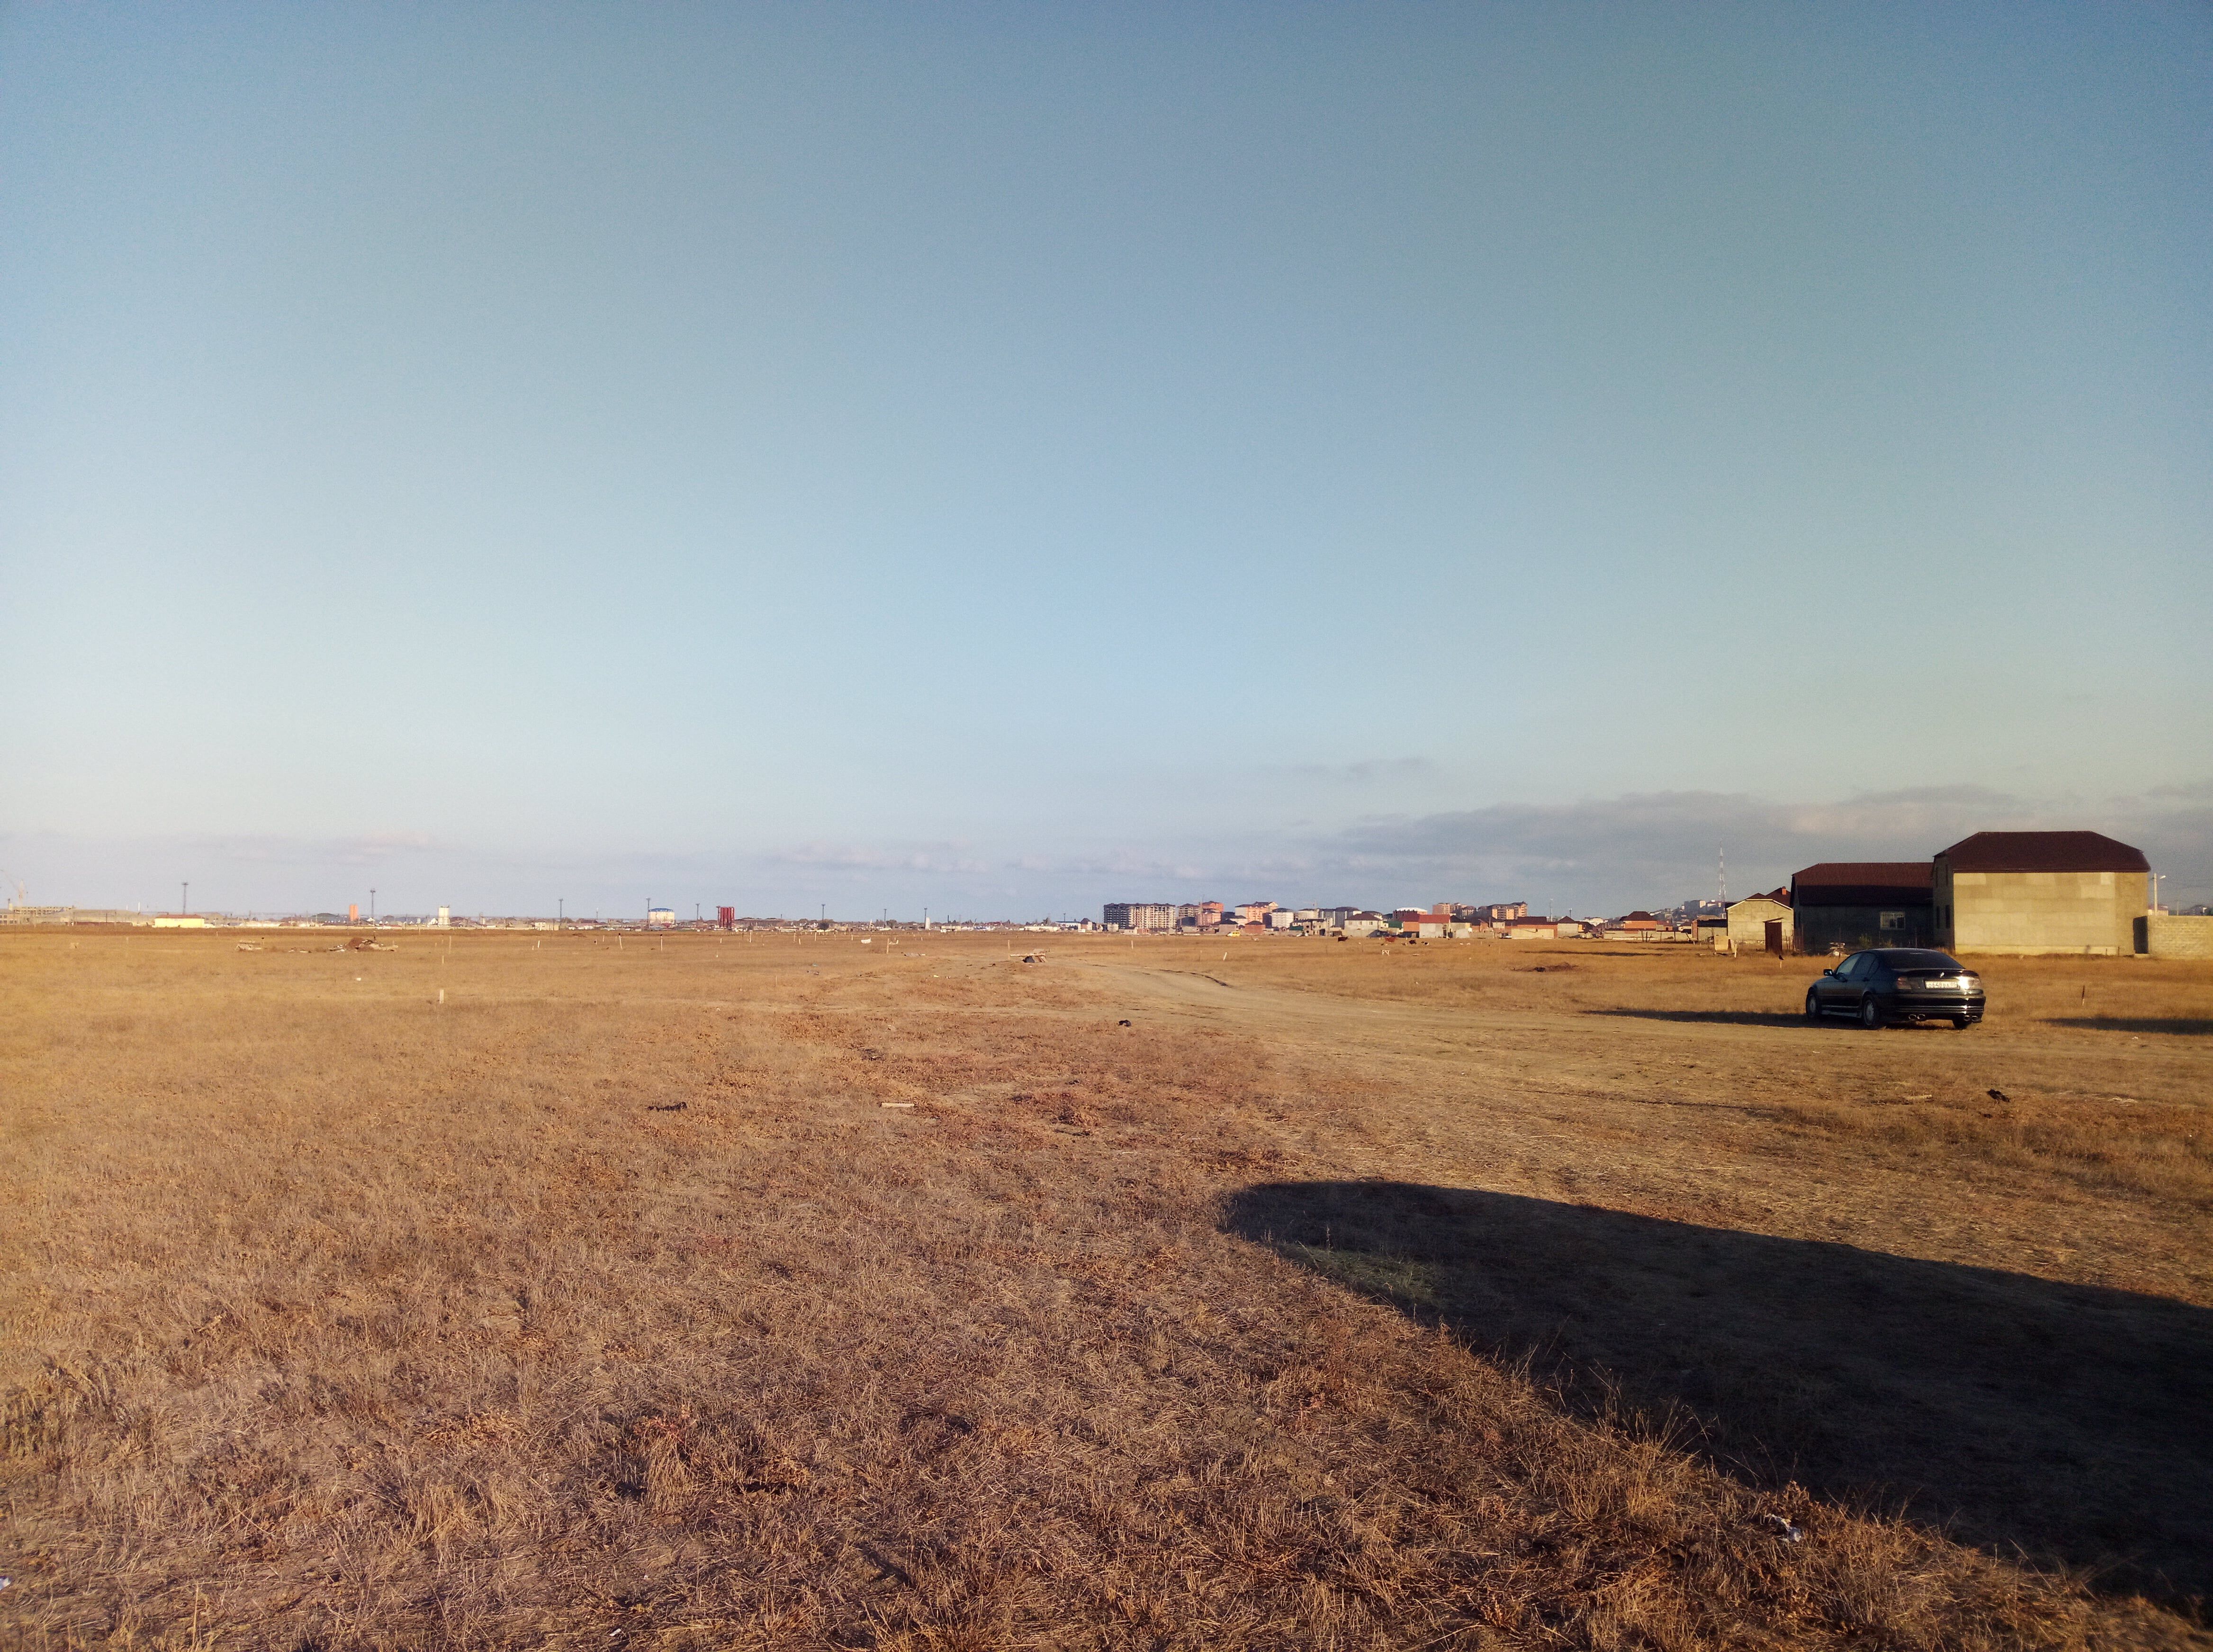 Поле в микрорайоне ДОСААФ, которое жители Альбурикента считают своими историческими землями. 25 октября 2019 года. Фото Расула Магомедова для «Кавказского узла»